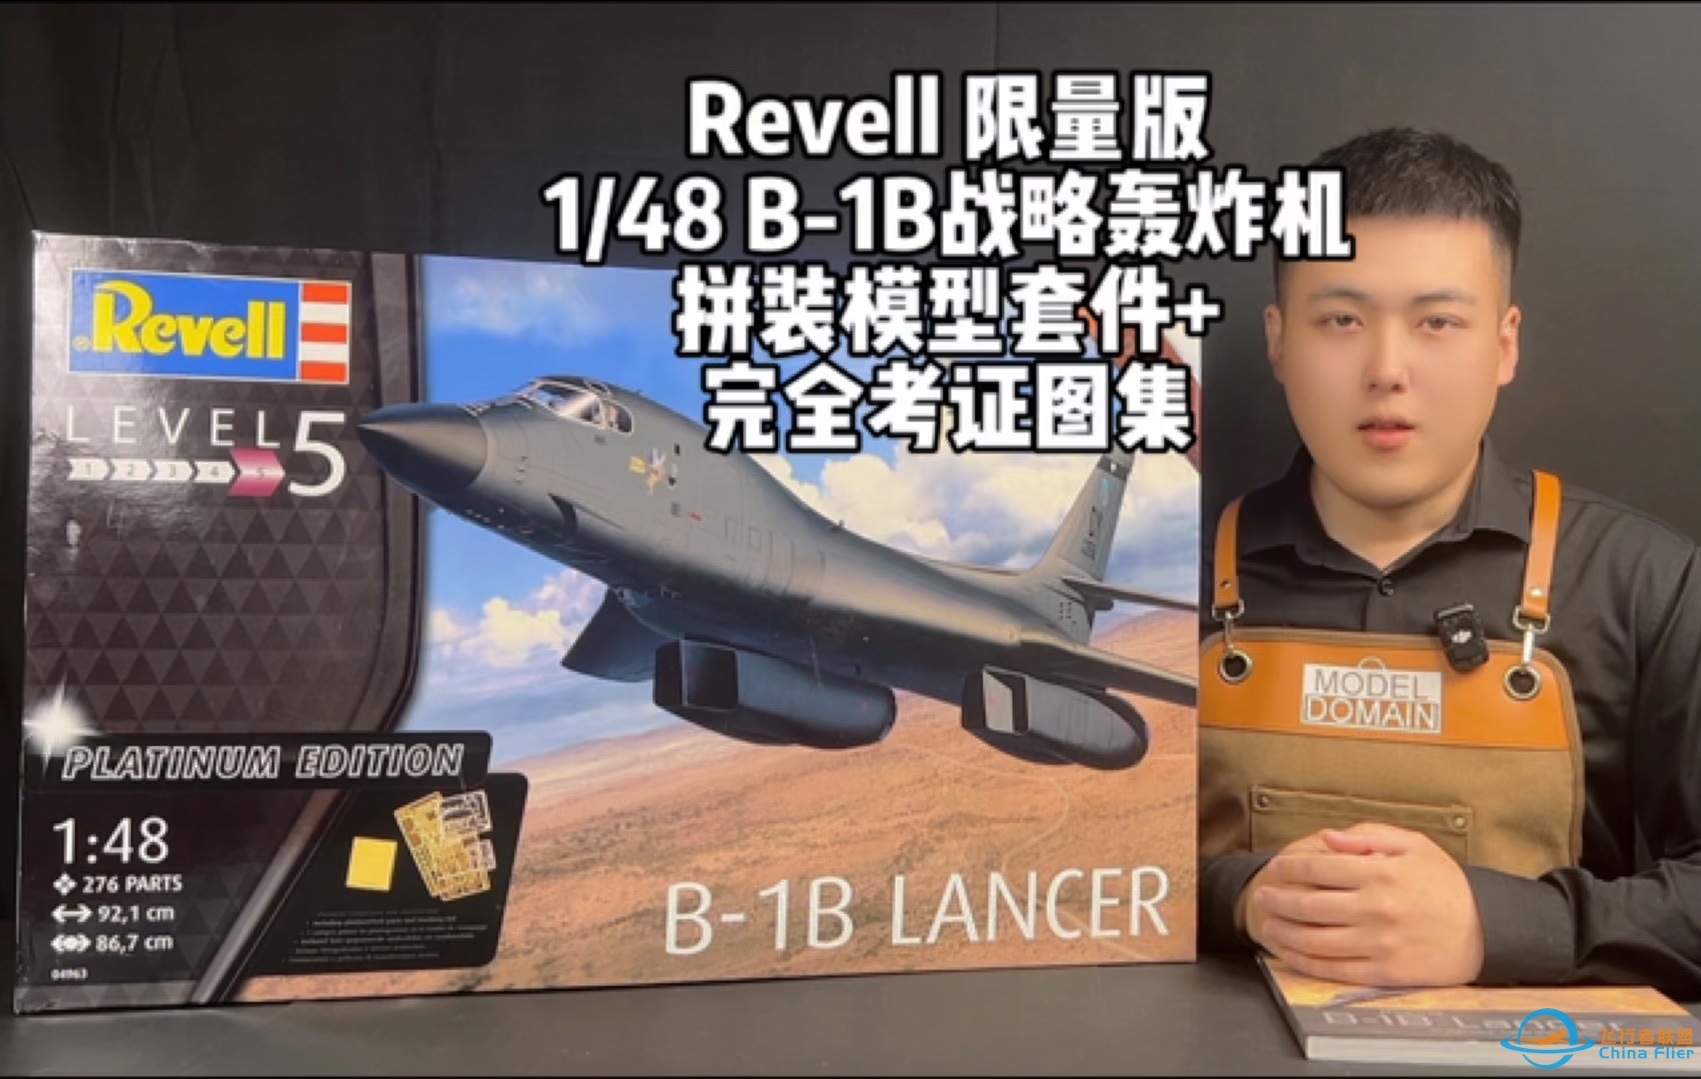 Revell 限量版 1/48 B-1B战略轰炸机拼装模型套件+完全考证图集#拼装模型#飞机模型#战机世界 #这才是男人的玩具  #军事模型#军迷#轰炸机